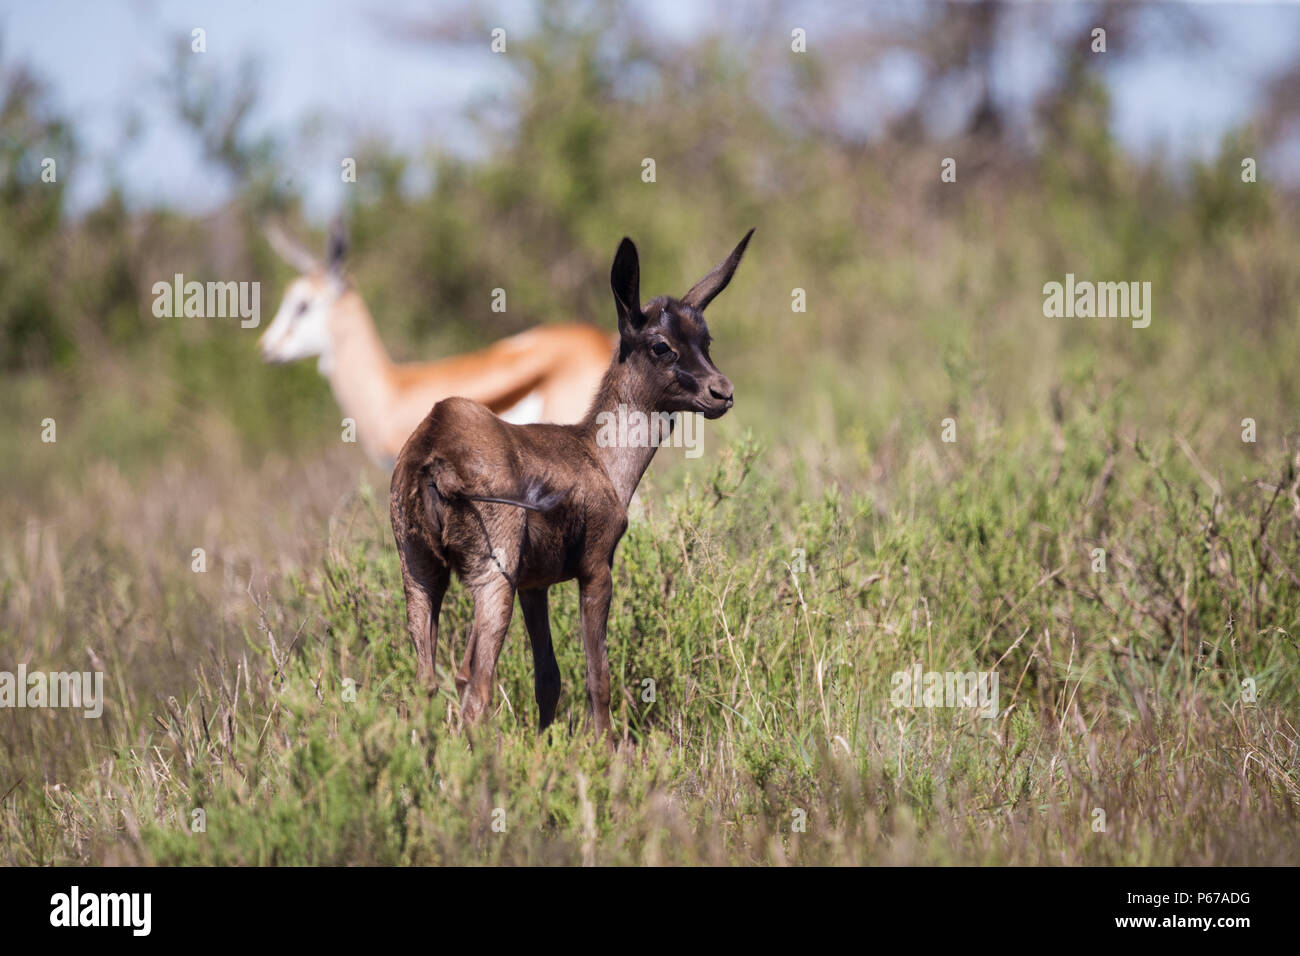 Springbok (Antidorcas marsupialis) antilope bébé Morph noir dans le parc national sauvage de Mokala, Afrique du Sud Banque D'Images